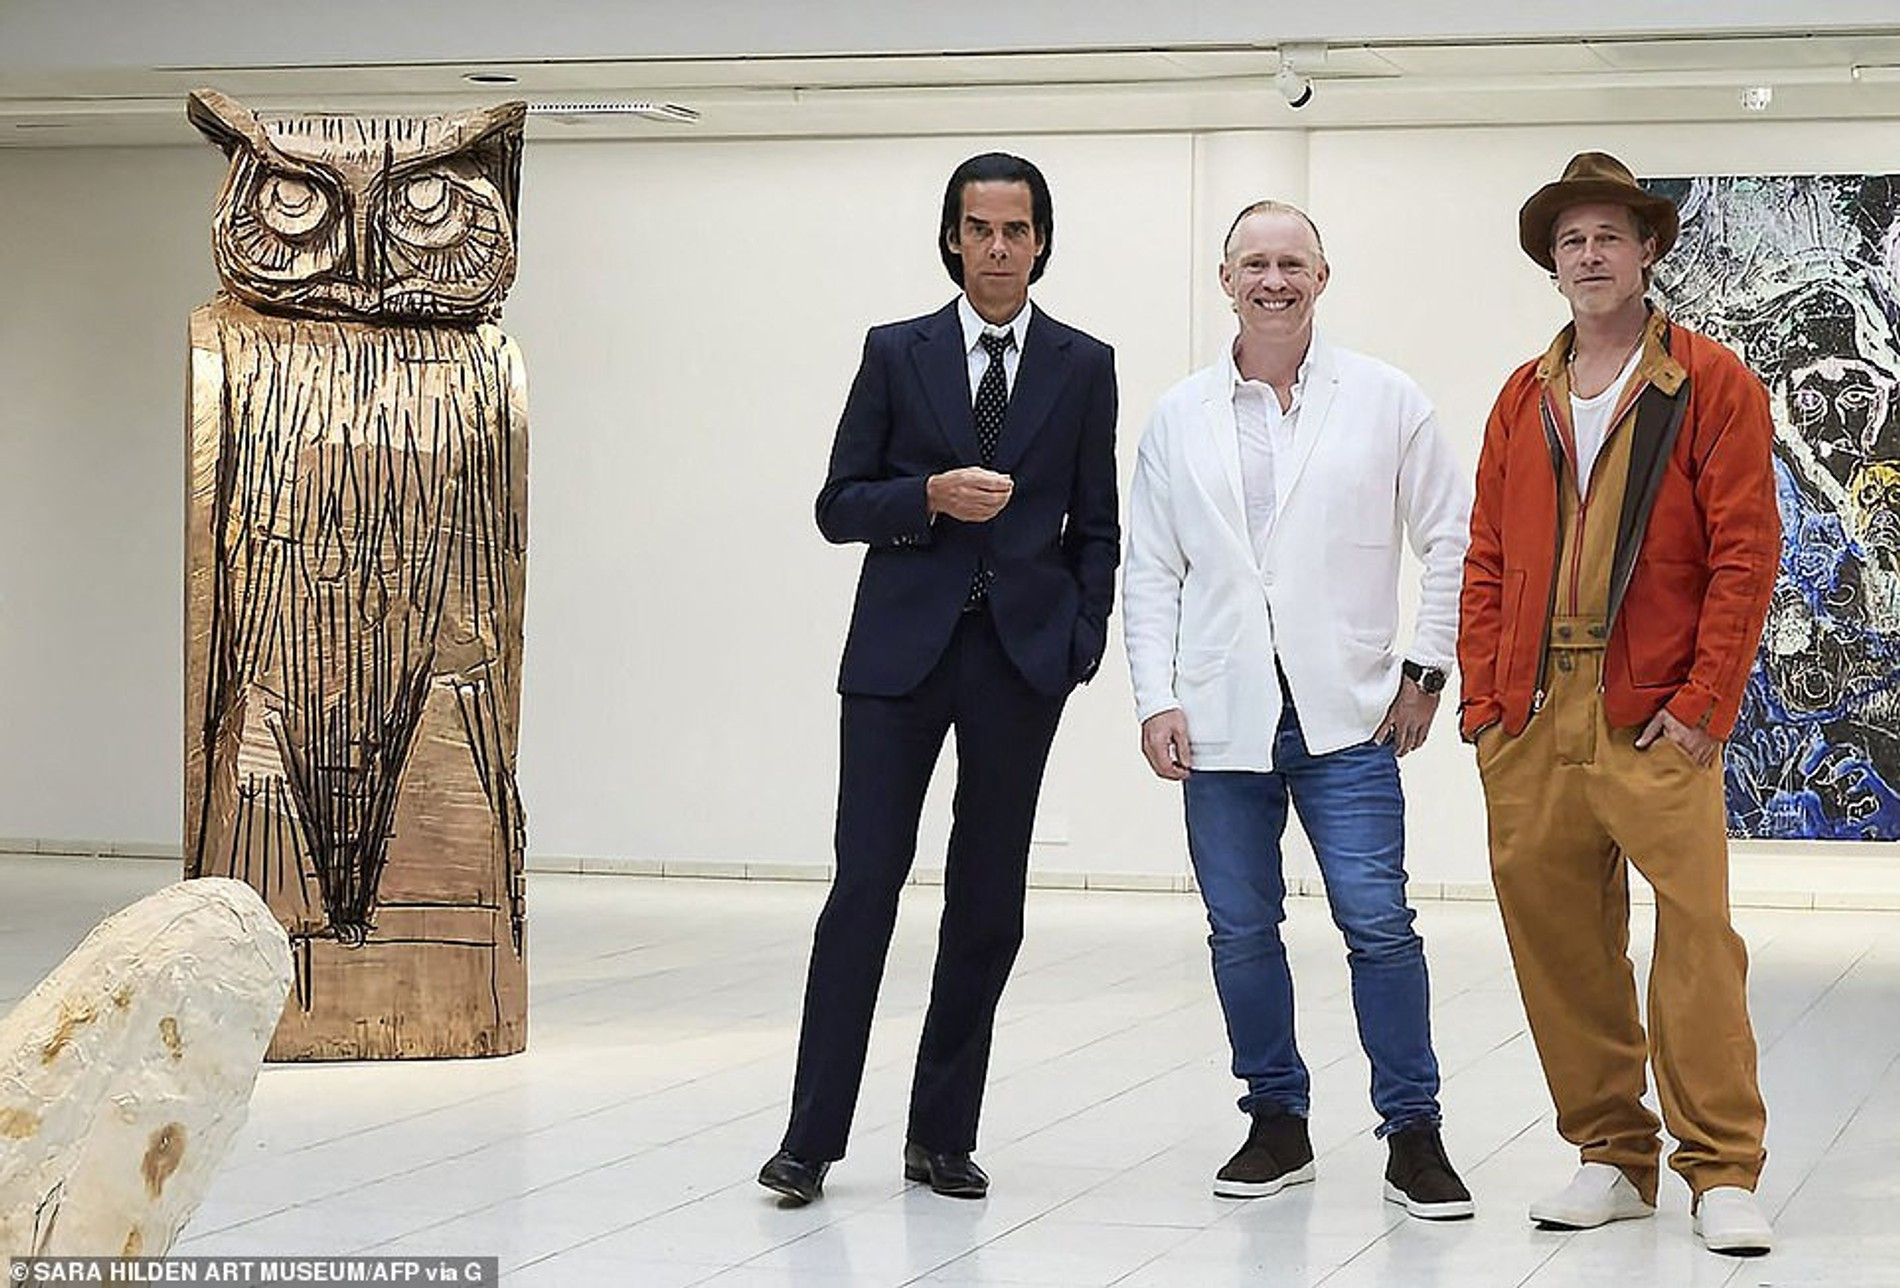 Ник Кейв, Томас Хаусаго и Брэд Питт на выставке в Тампере 
Фото: AFP